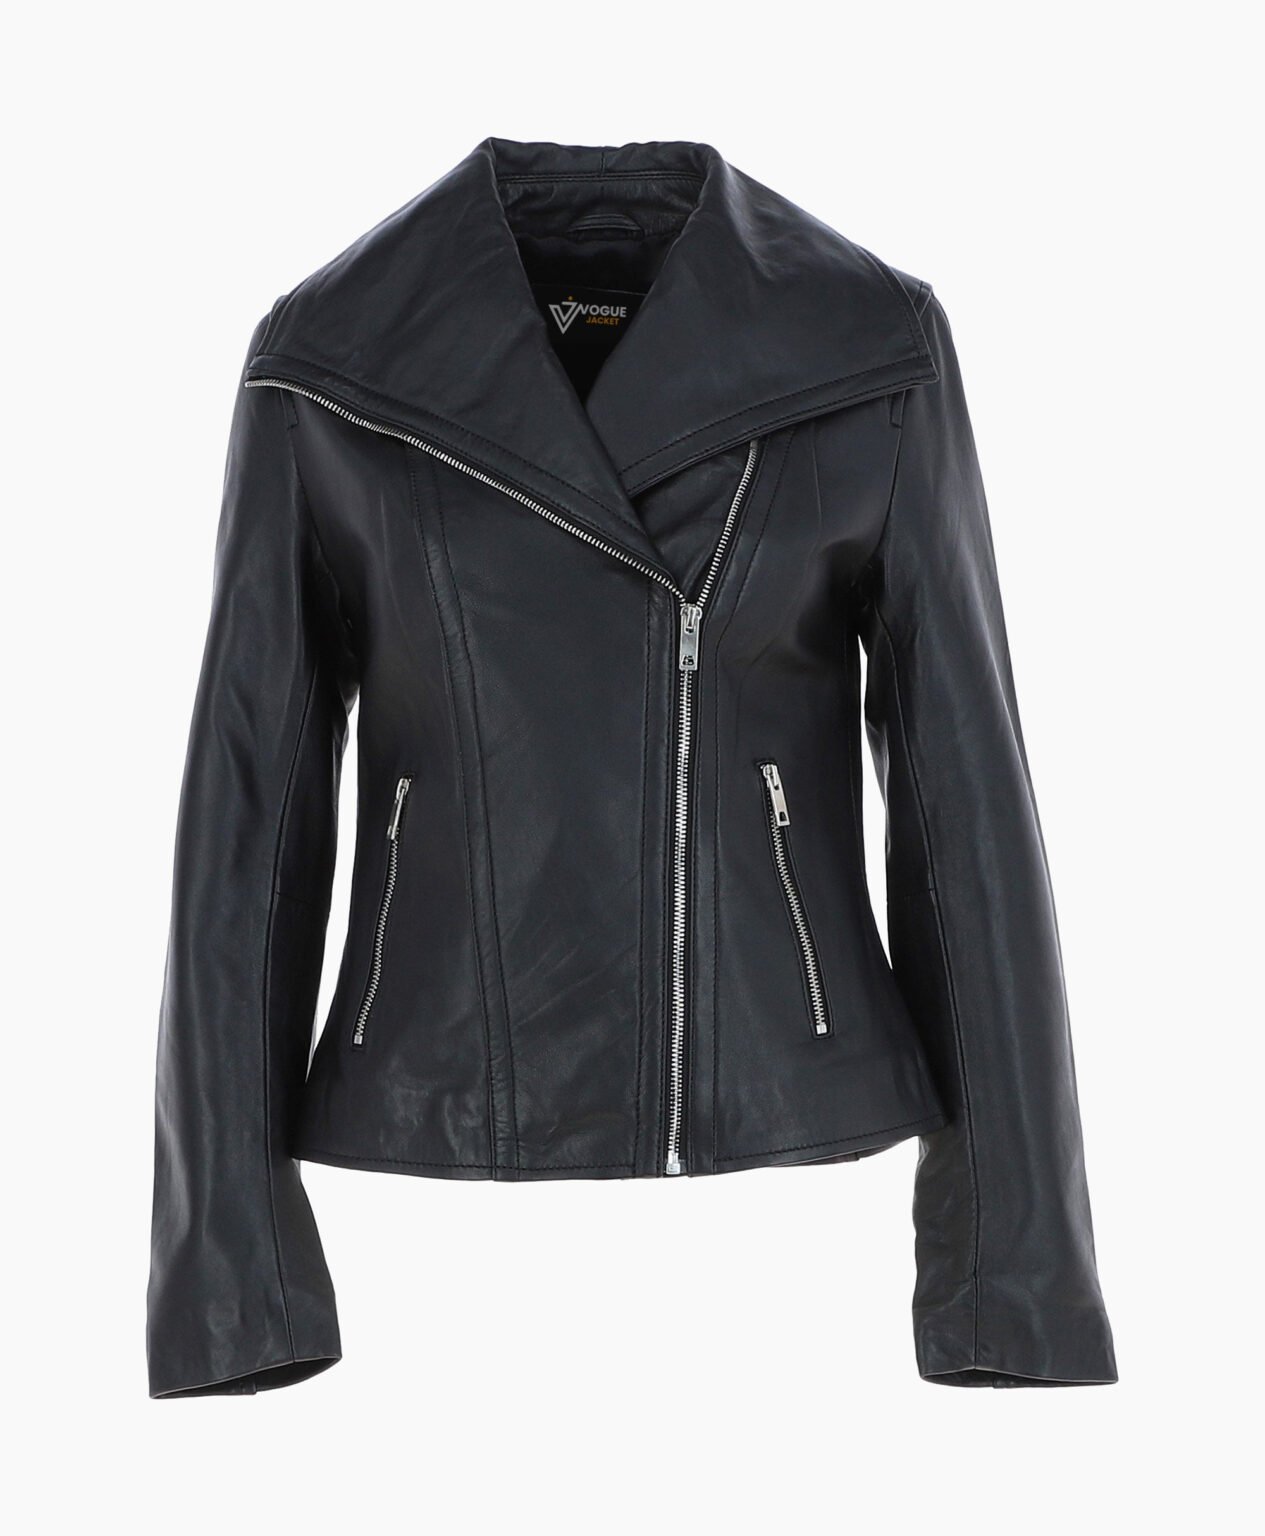 vogue-jacket-leather-jacket-fashion-collar-black-shelby-image200